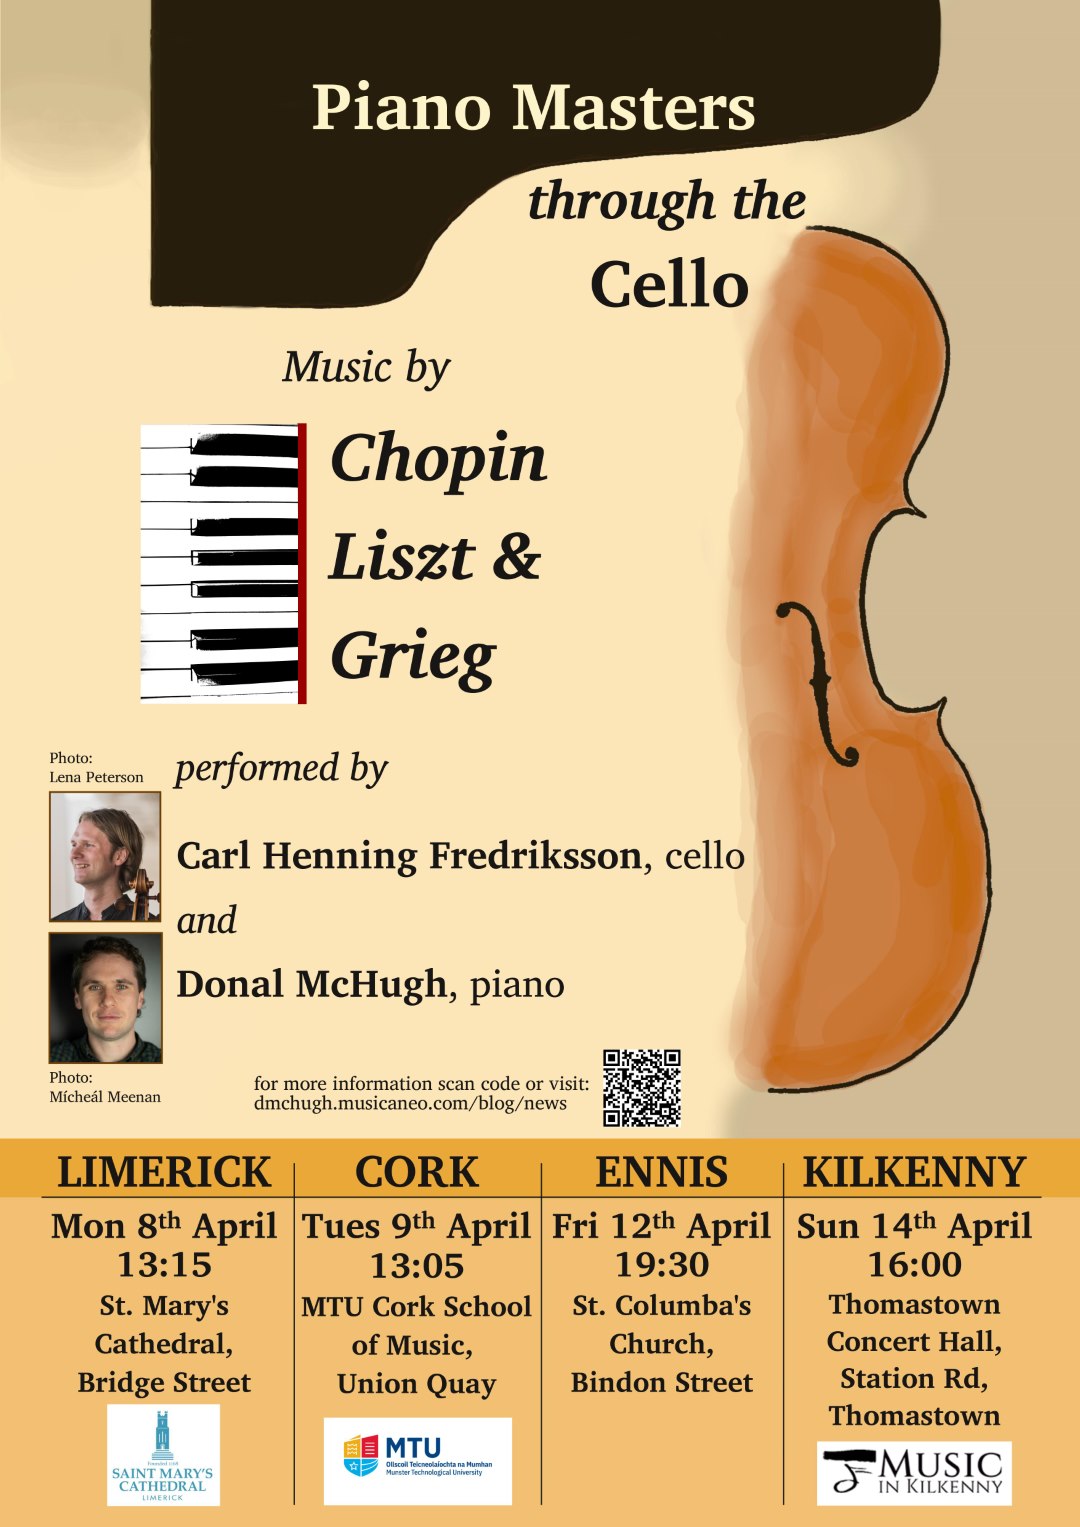 Piano Masters Cello Concert Poster